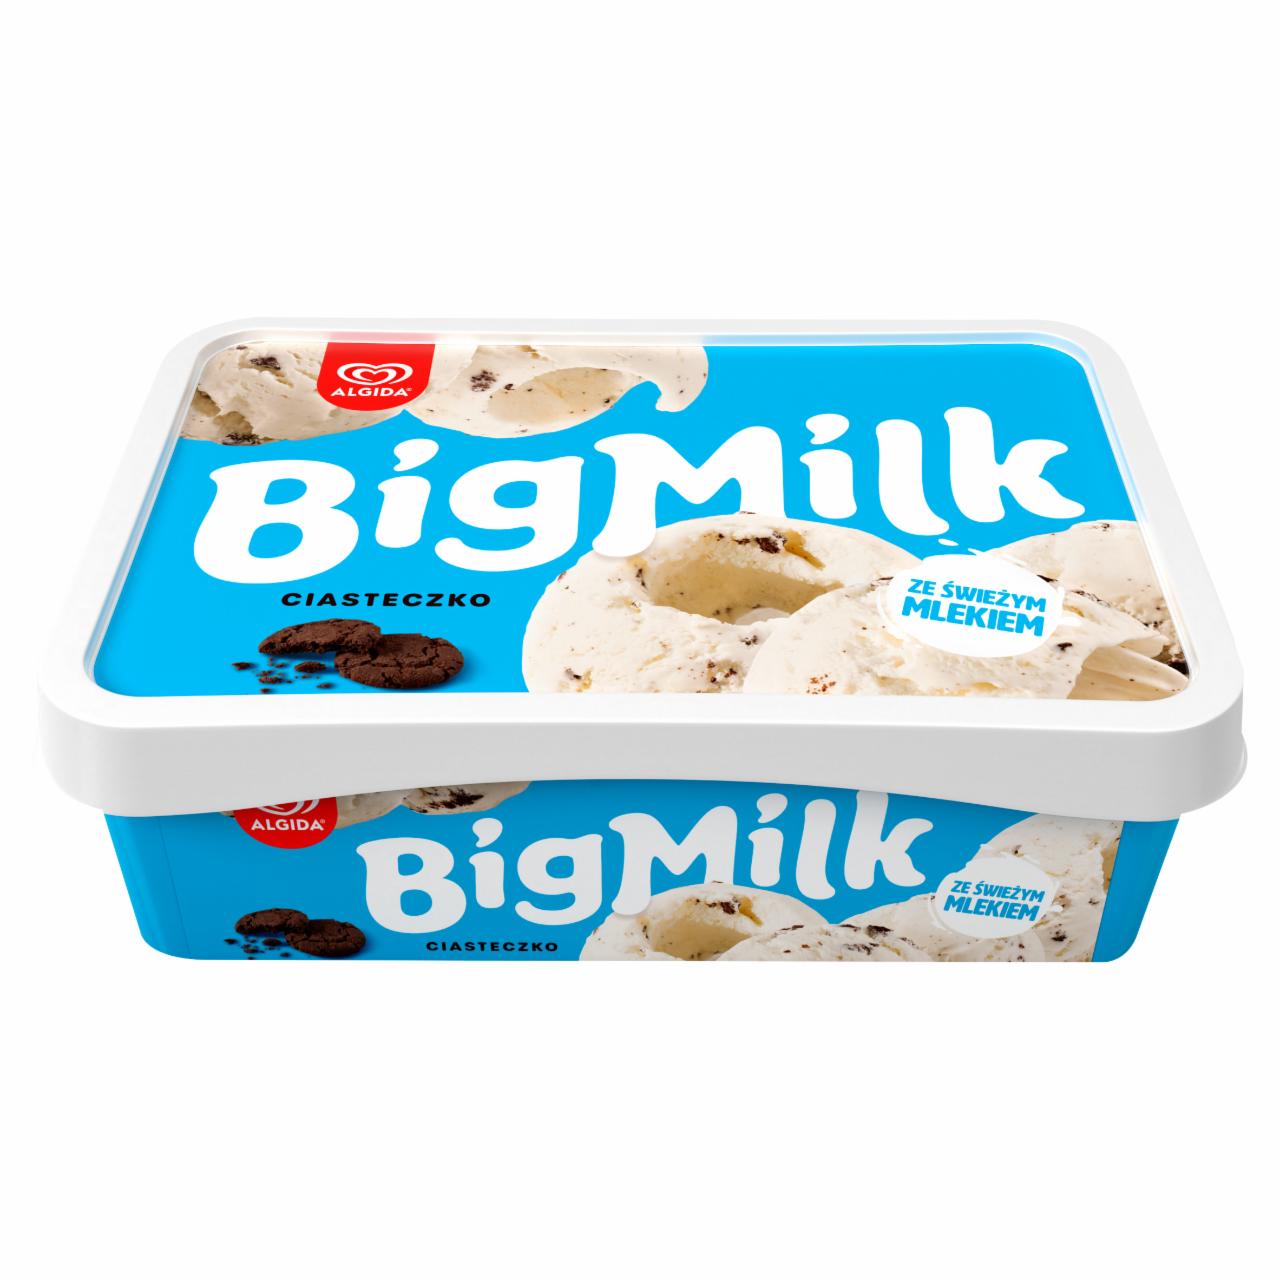 Zdjęcia - Big Milk Ciasteczko Lody 900 ml